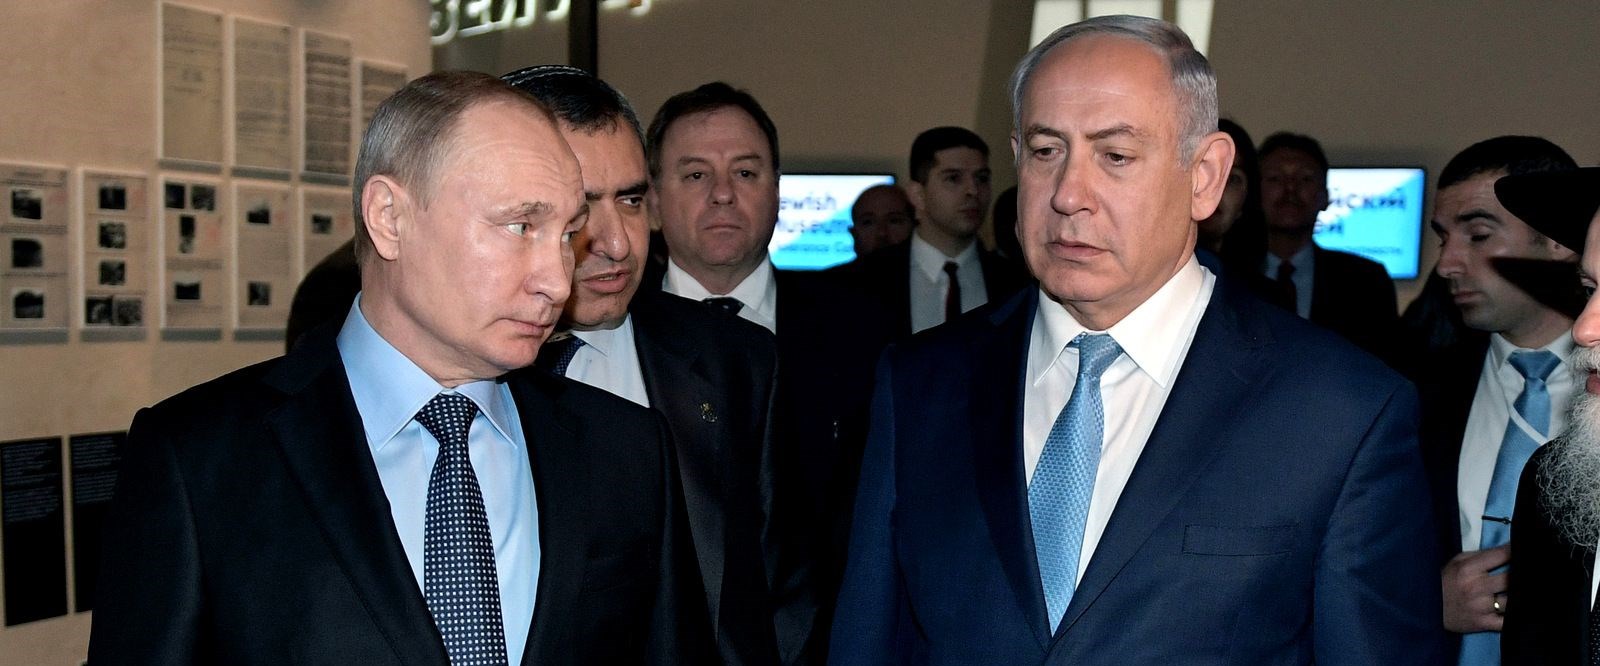 Putin’den Netanyahu’ya Suriye uyarısı